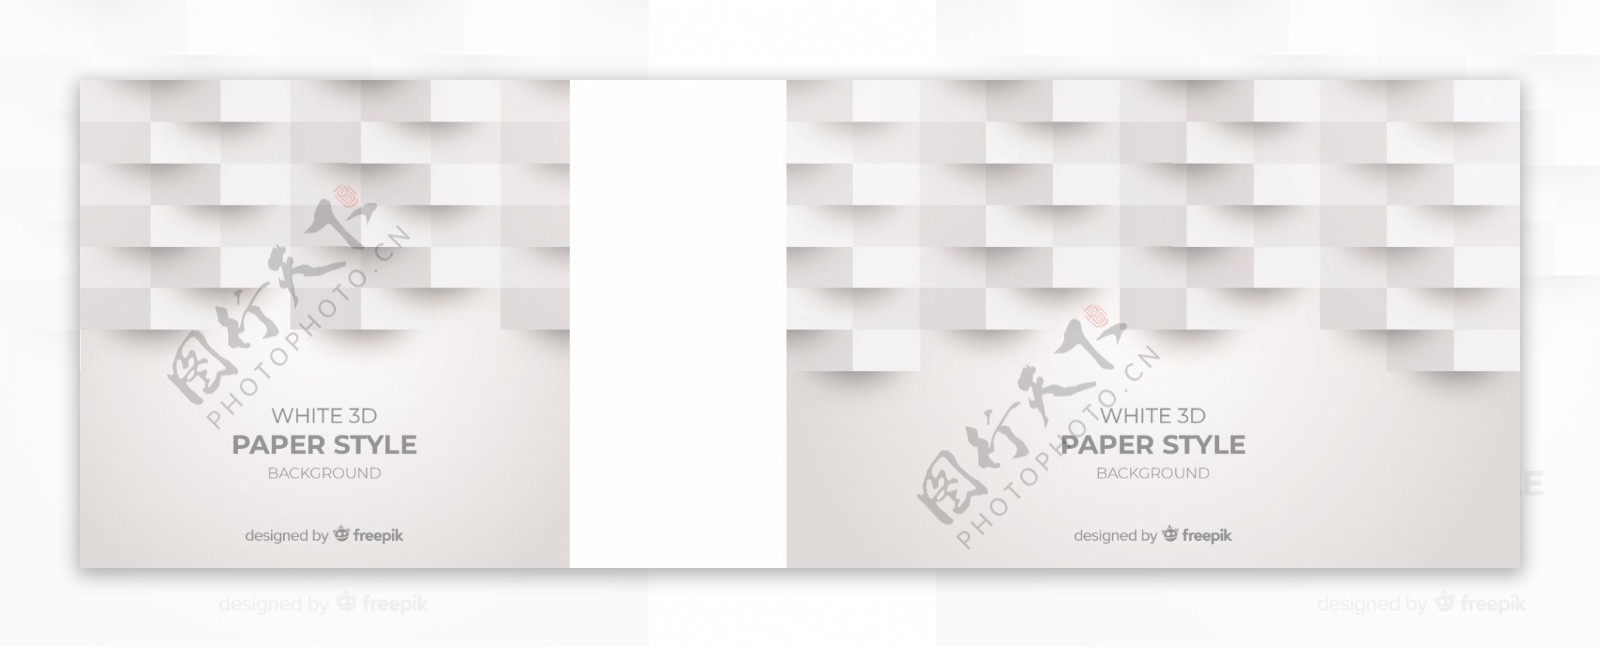 白色3d折纸类型背景